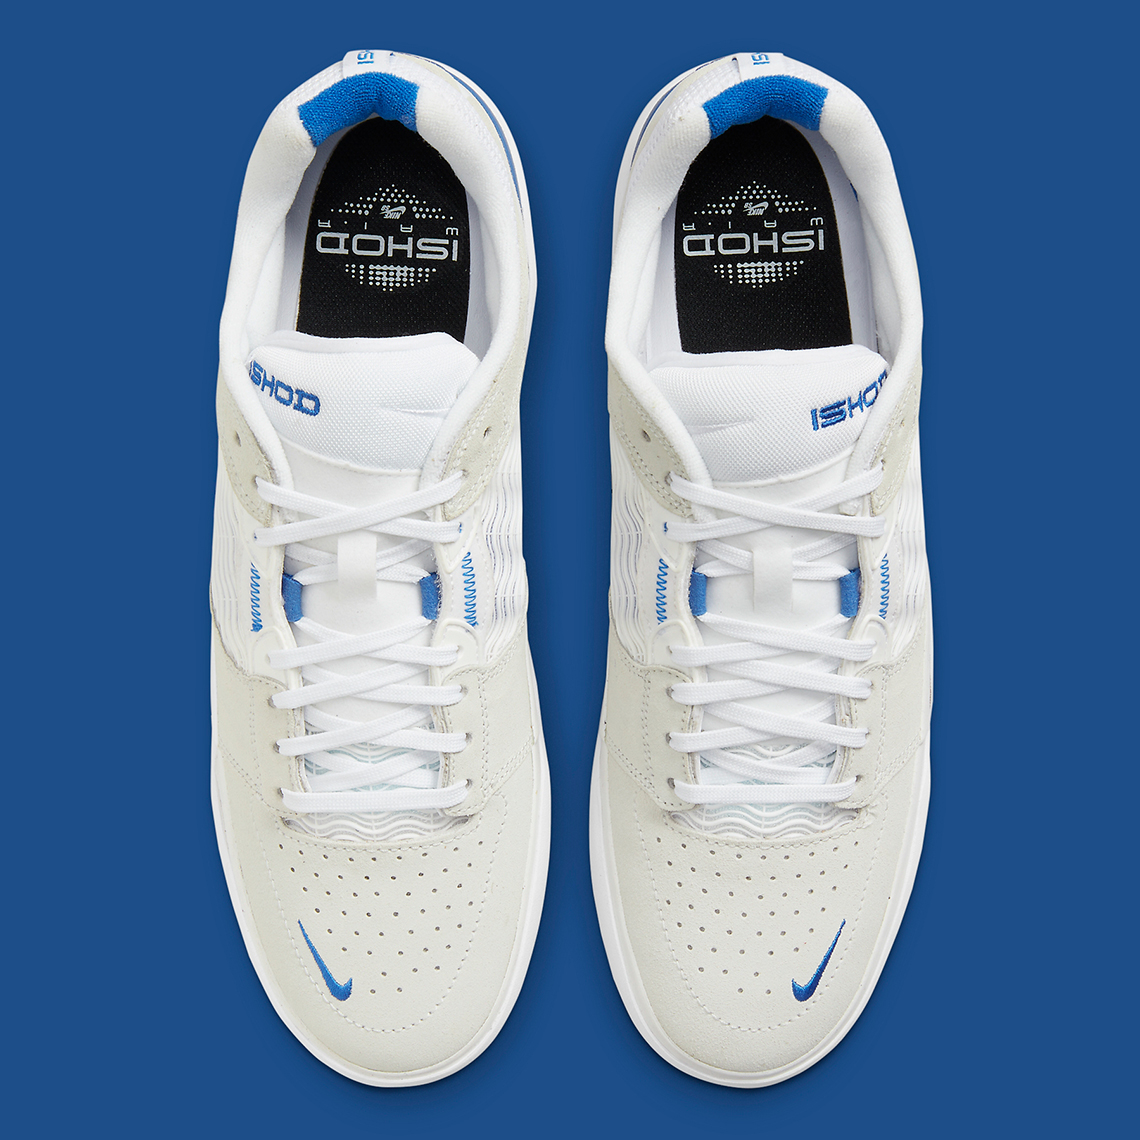 Nike Sb Ishod White Blue Dc7232 100 3